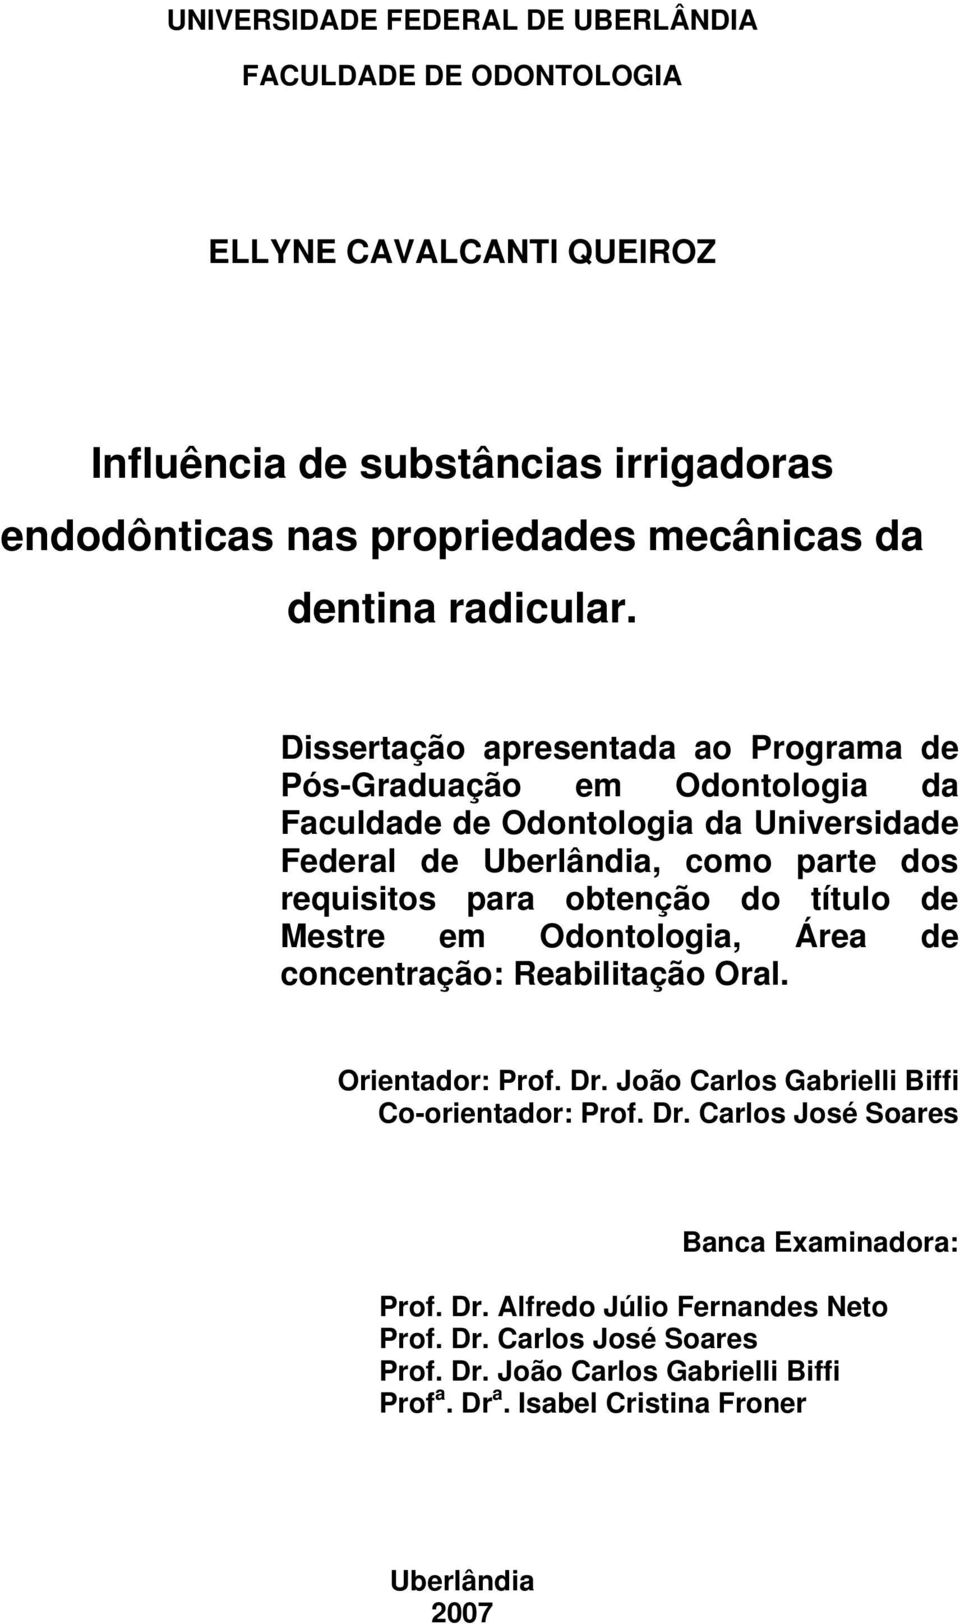 Dissertação apresentada ao Programa de Pós-Graduação em Odontologia da Faculdade de Odontologia da Universidade Federal de Uberlândia, como parte dos requisitos para obtenção do